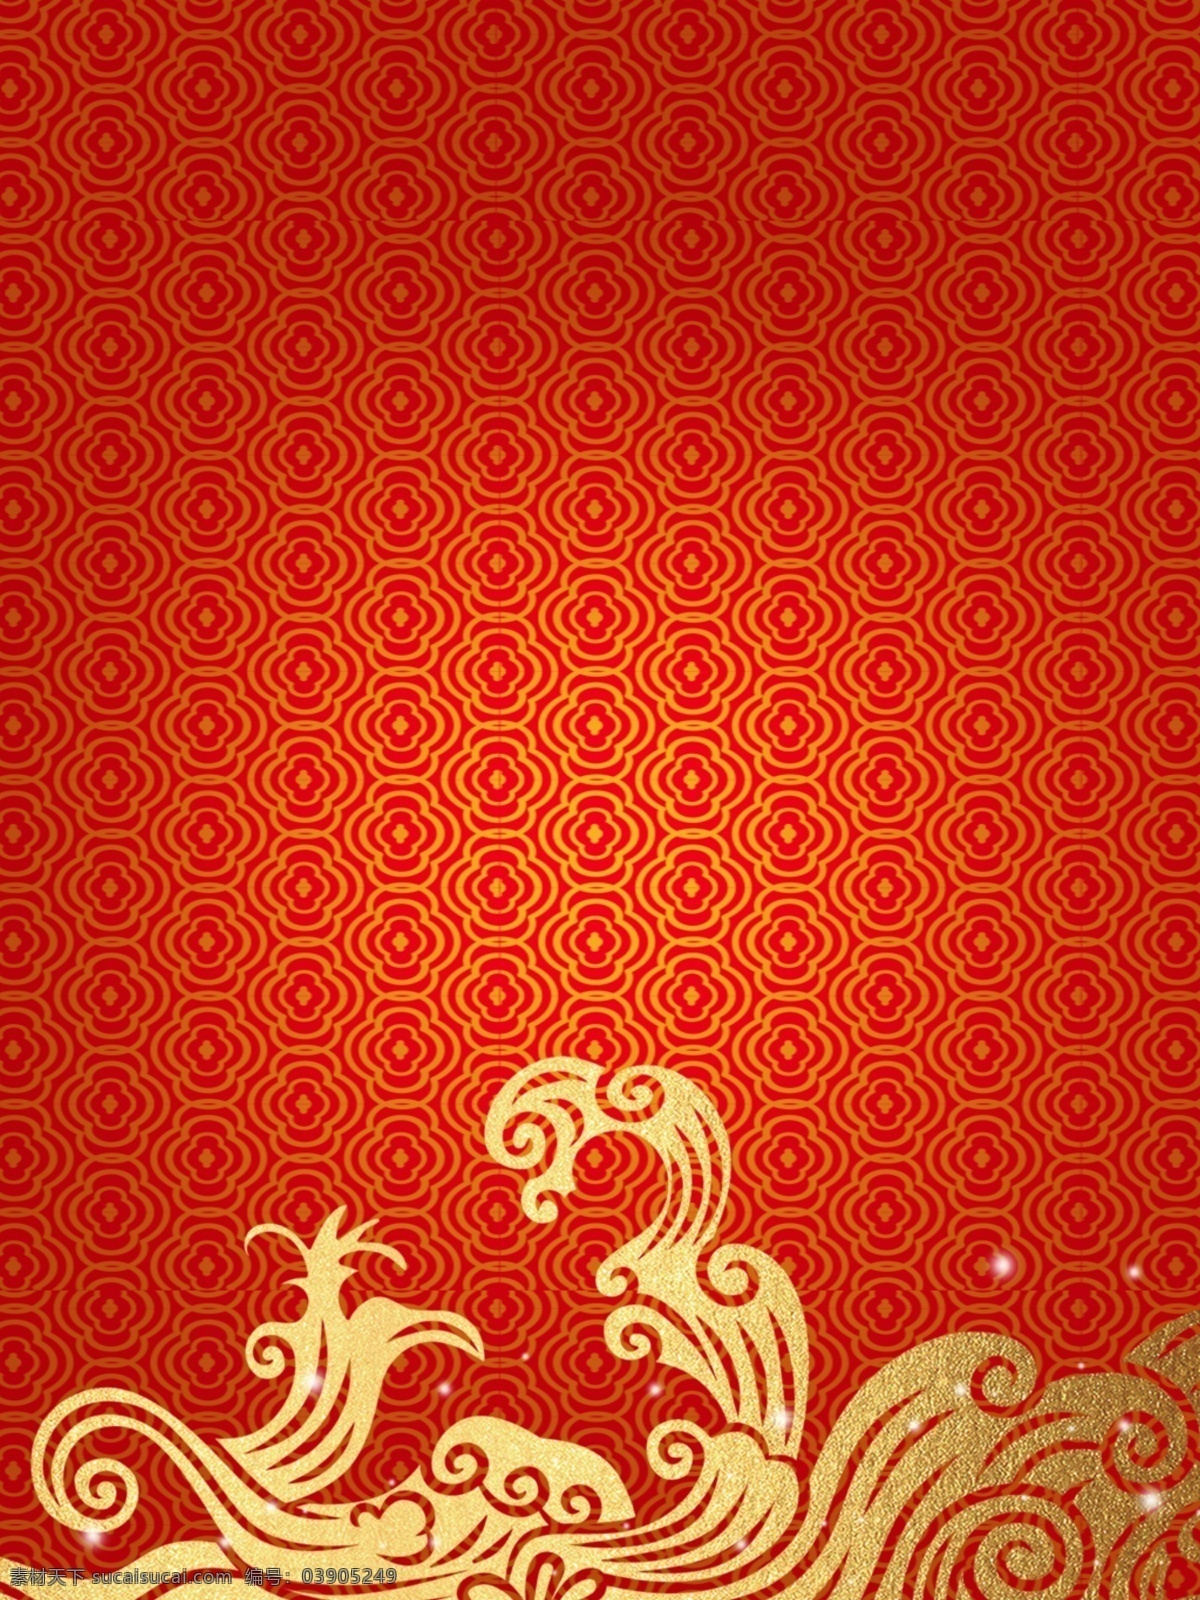 中国 风 红色 纹理 背景图片 创意 中国风 背景 背景素材 底纹边框 背景底纹